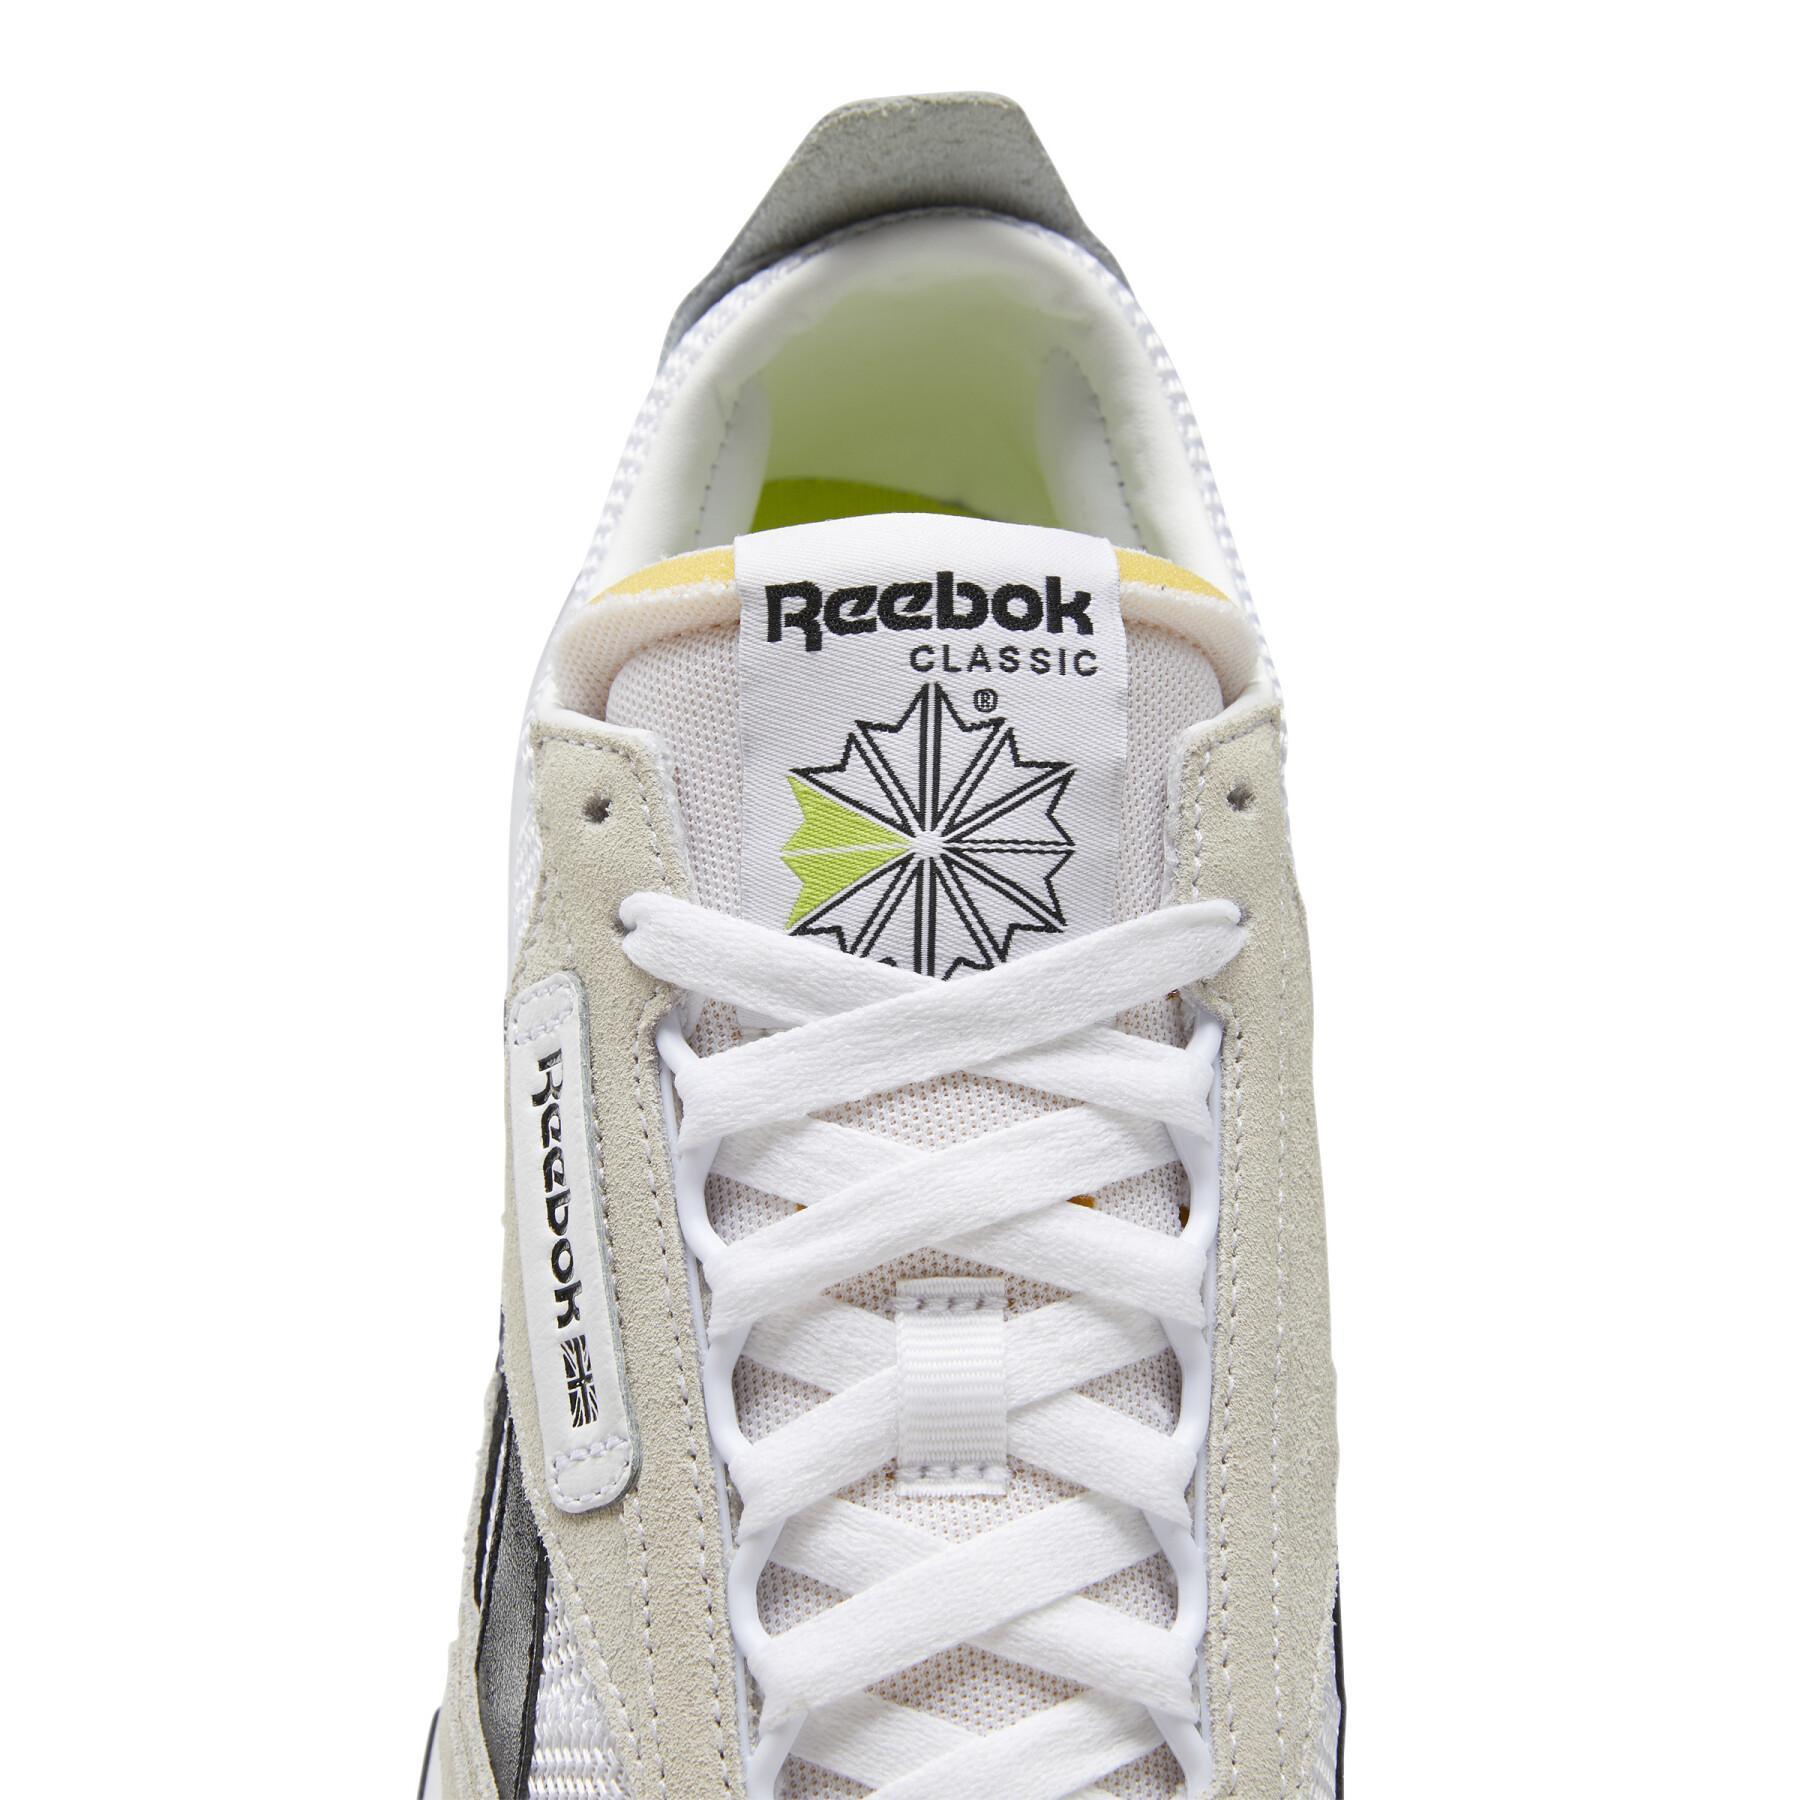 Schuhe Reebok CL Legacy